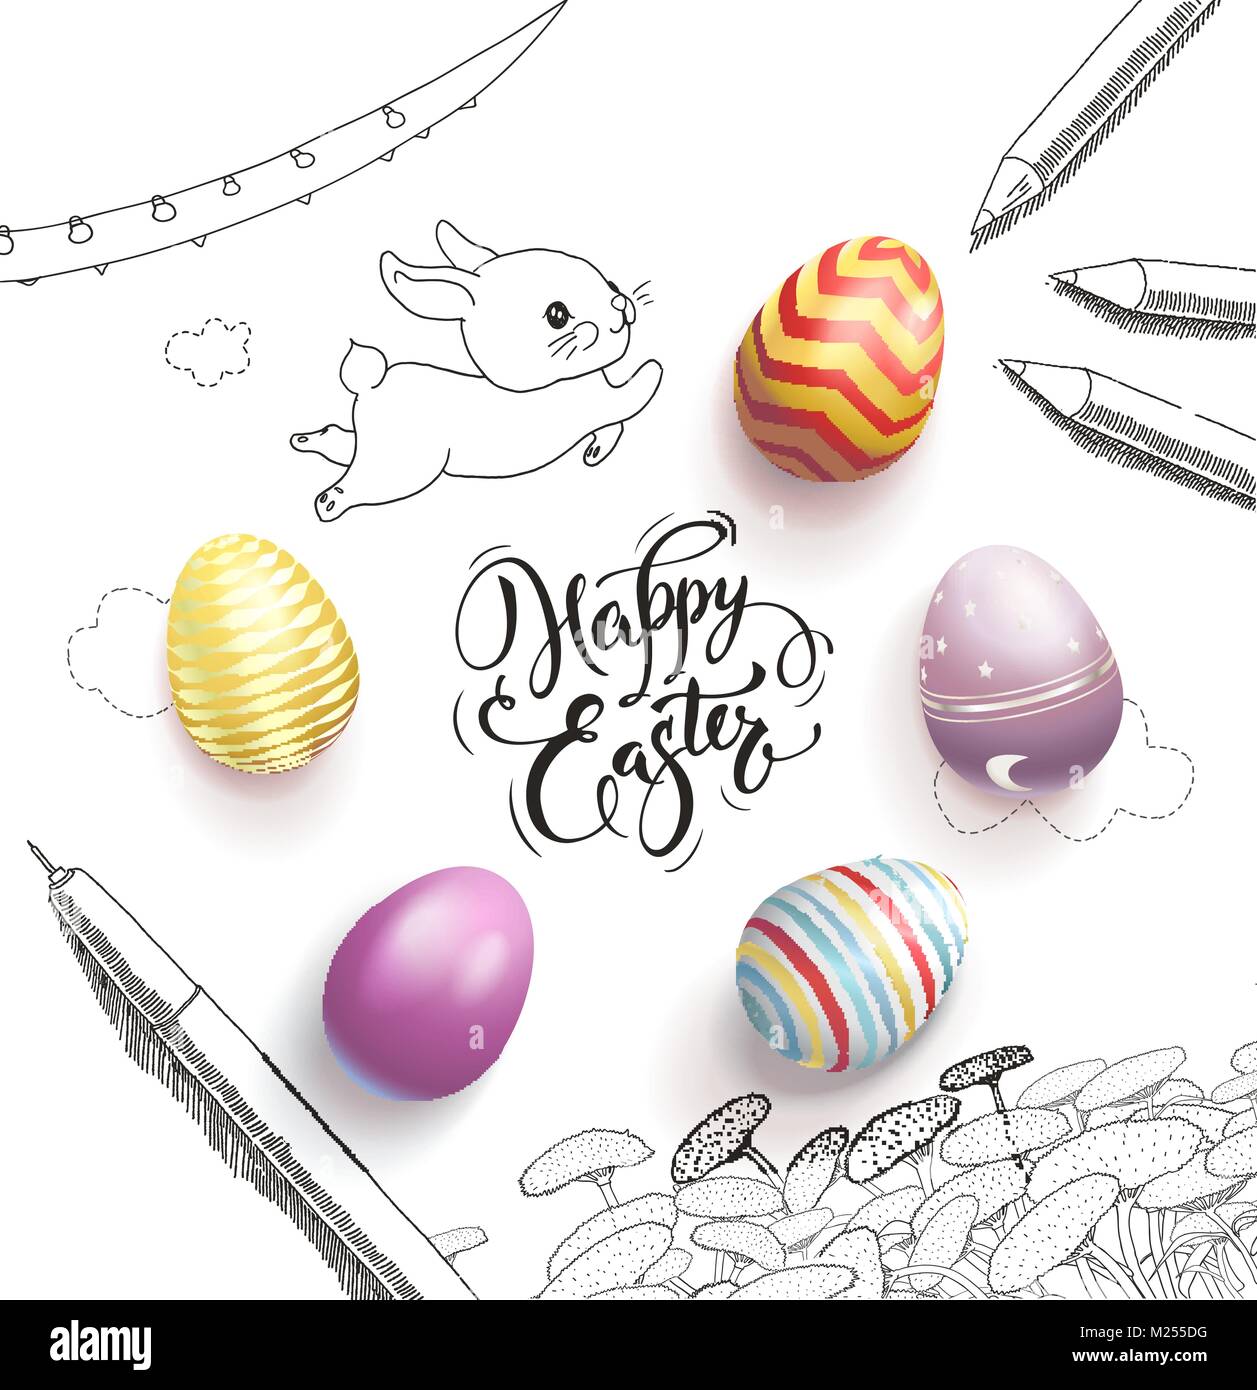 Felices Pascuas rotulación manuscrita con fuente caligráfica, rodeado de coloridos huevos, lindo bebé conejito, el diente de león, nubes, pluma, lápices, garland dibujadas a mano con líneas de contorno. Ilustración vectorial. Ilustración del Vector